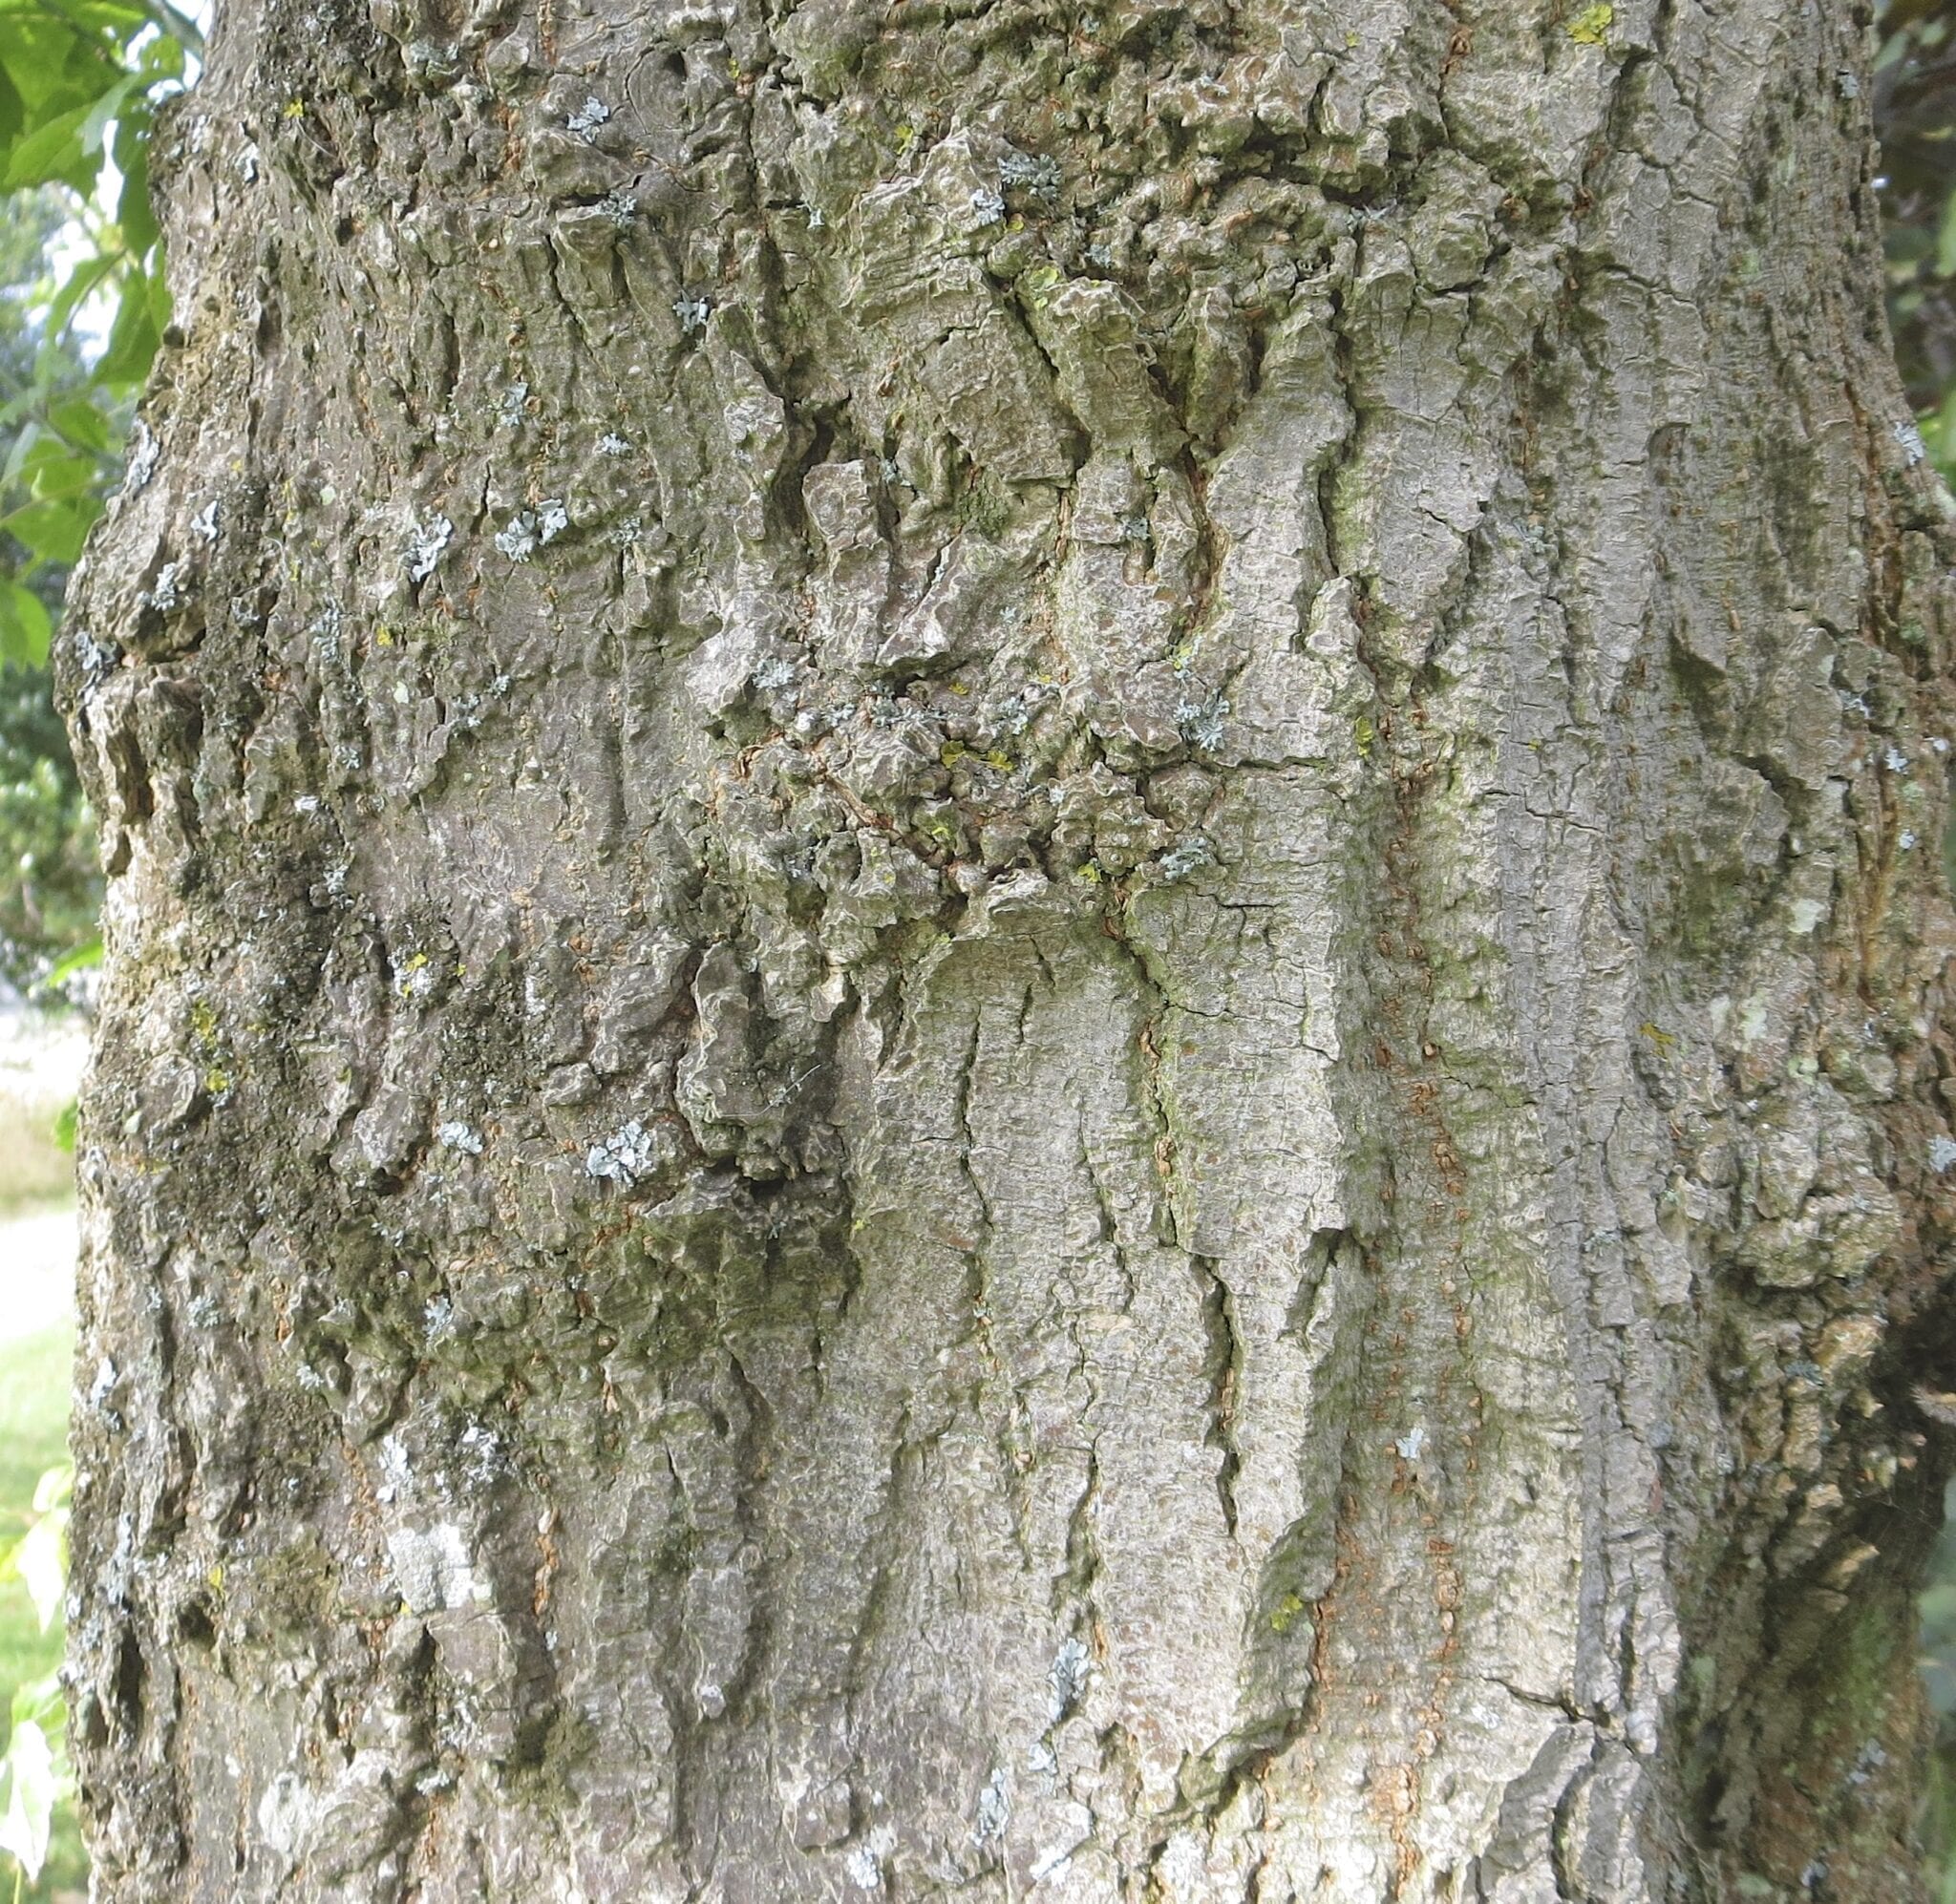 Box Elder bark